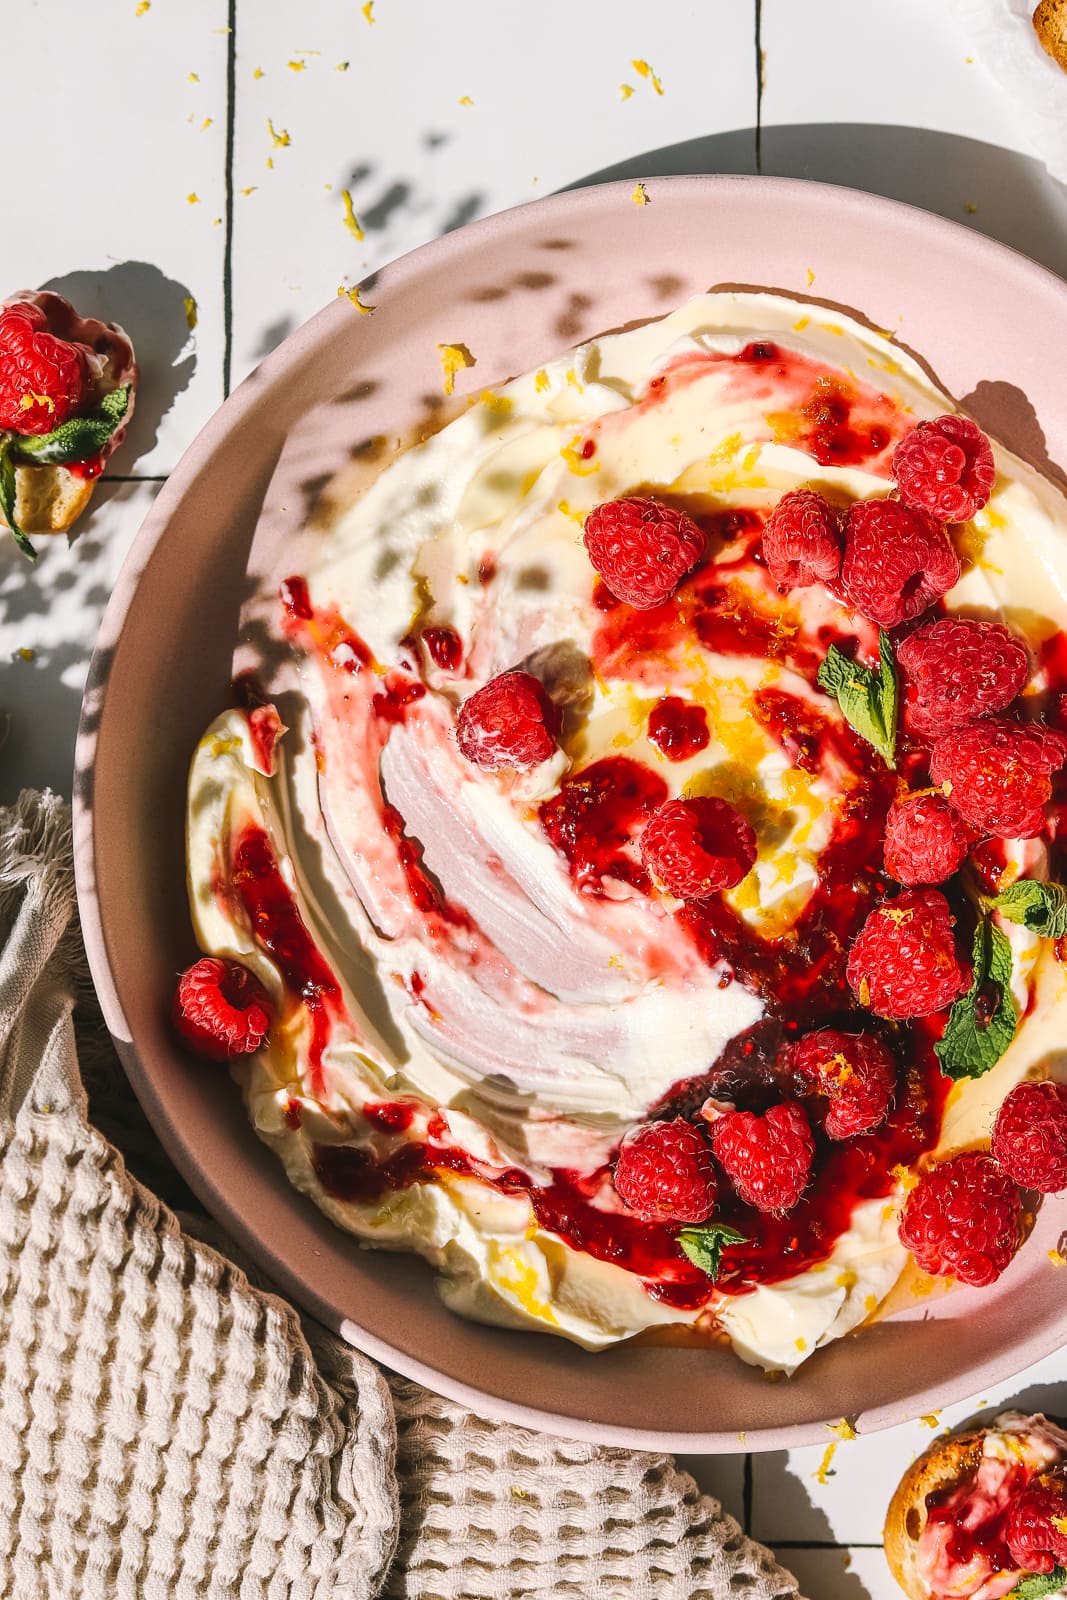 raspberries & lemon on top of cream cheese dip